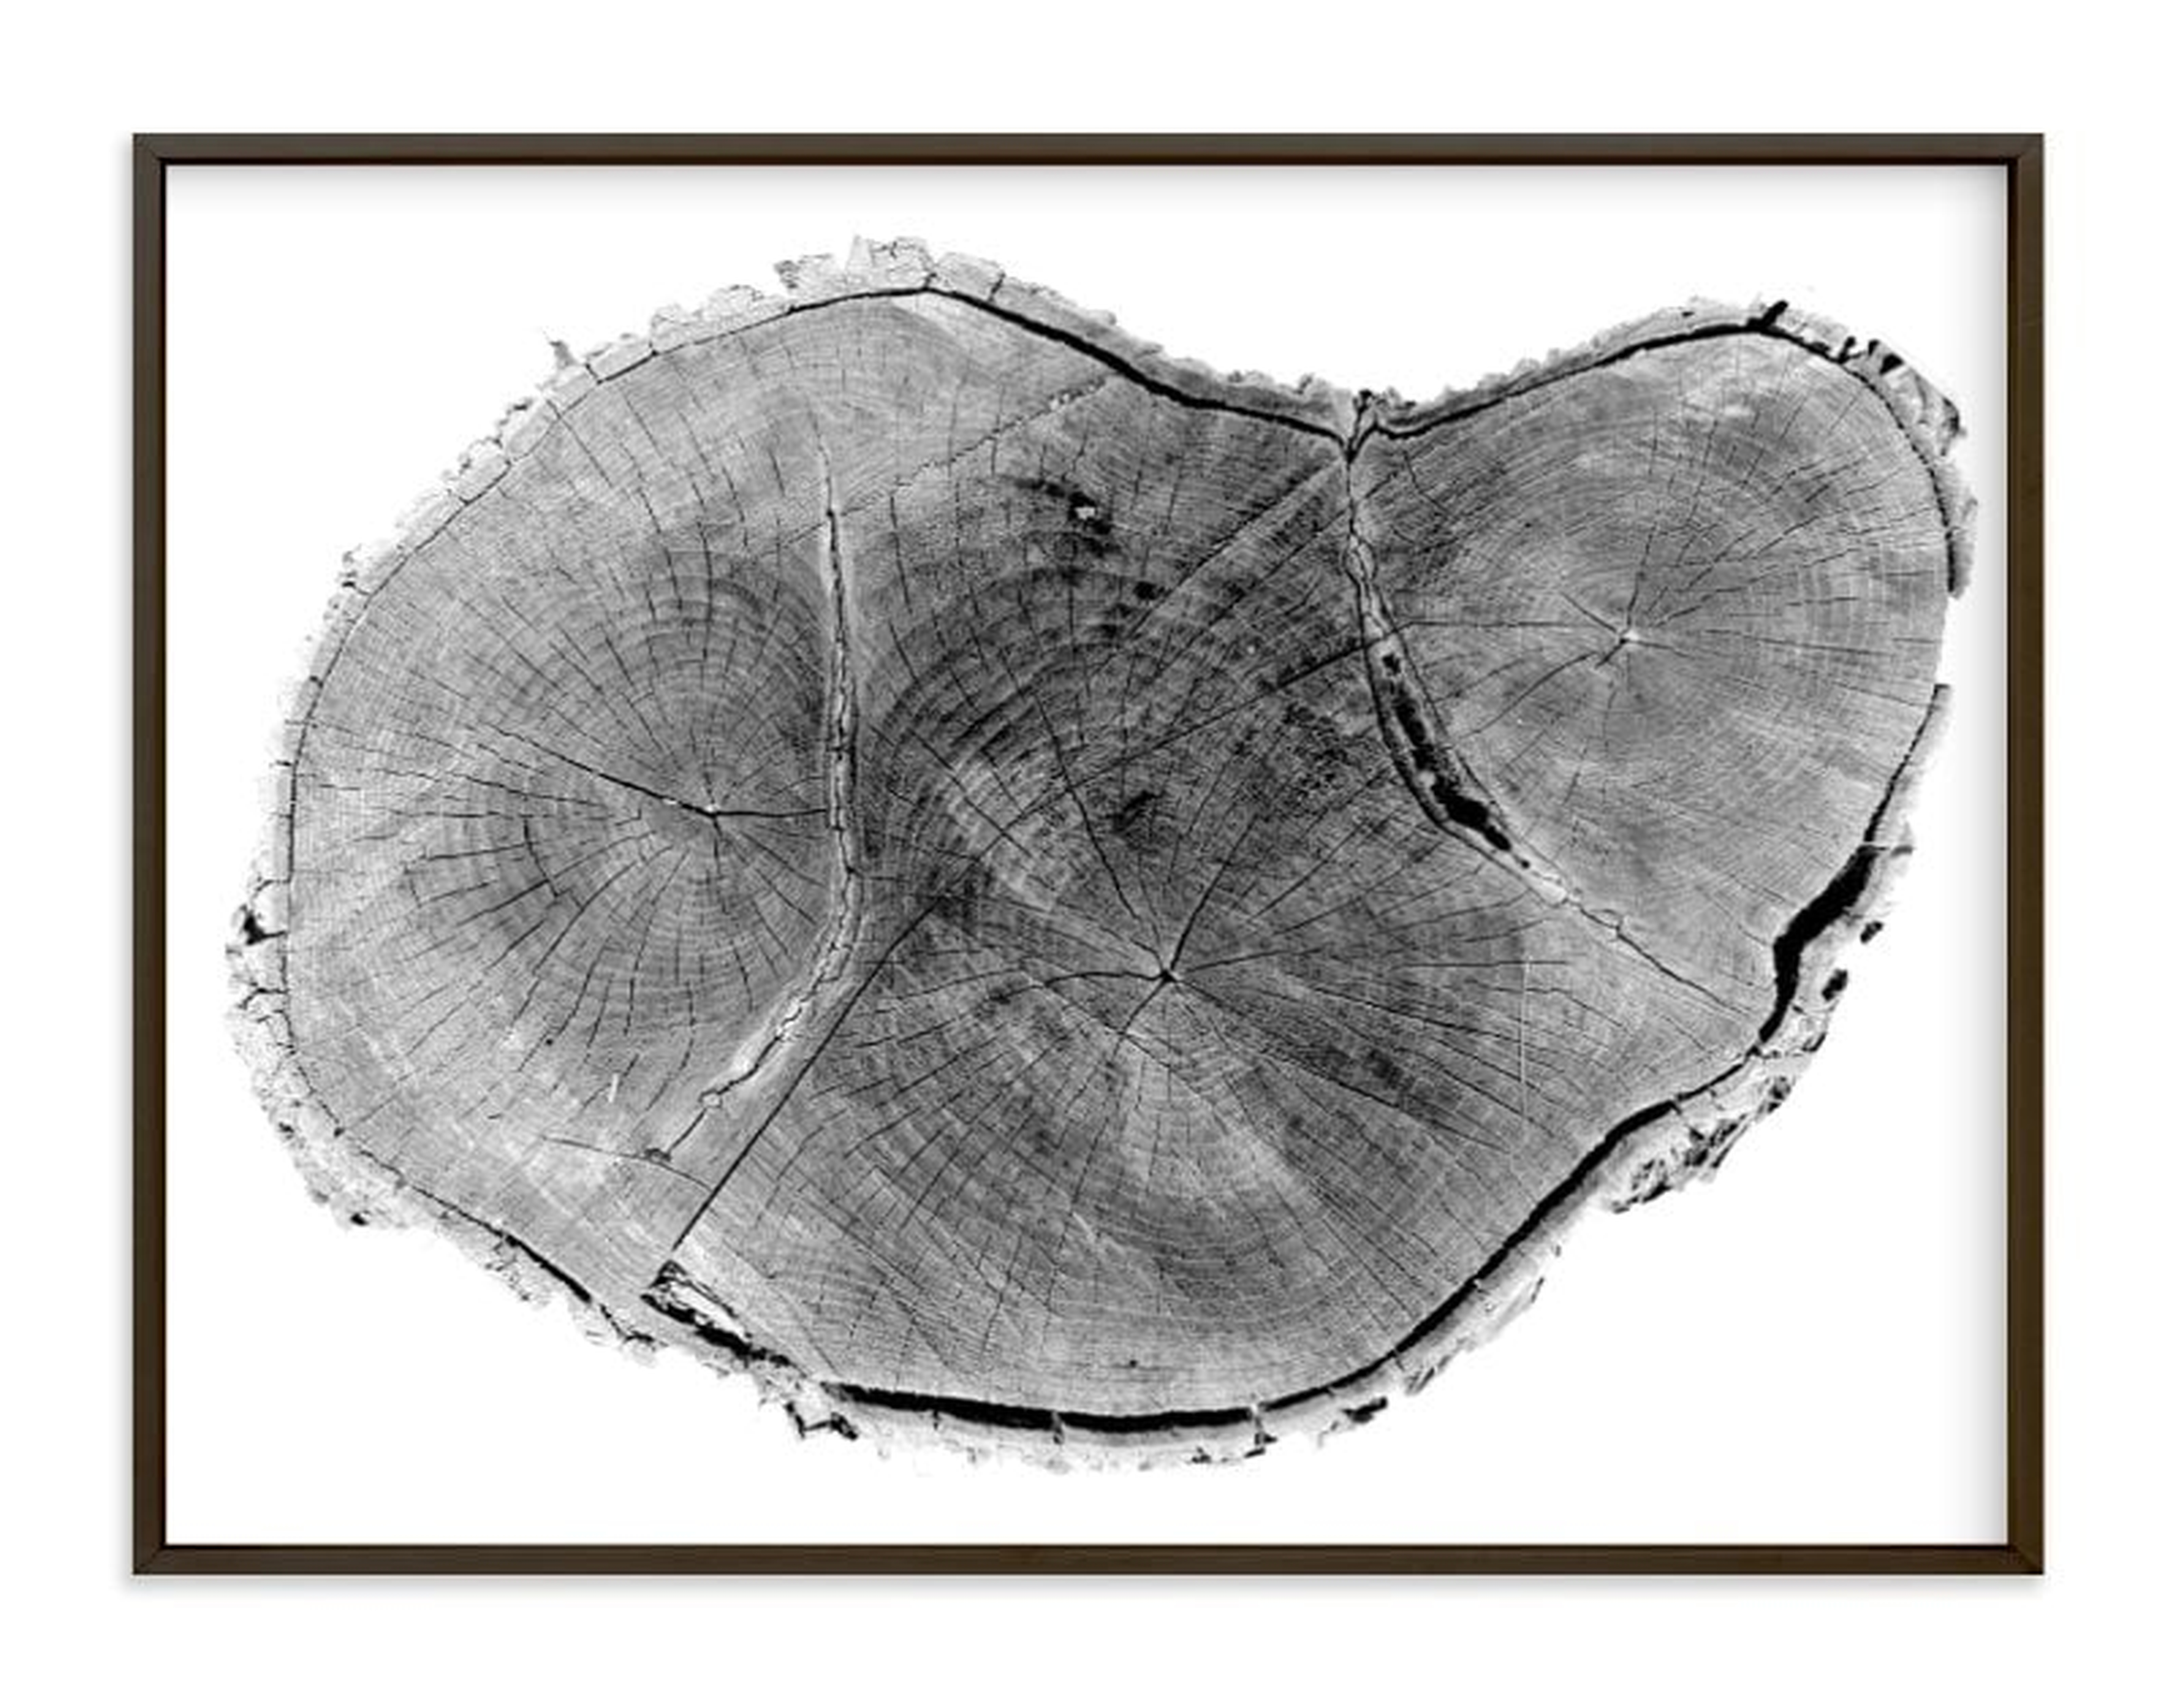 Tree rings pt. 1 - 40" x 30" - Matte Black Metal Frame - Minted